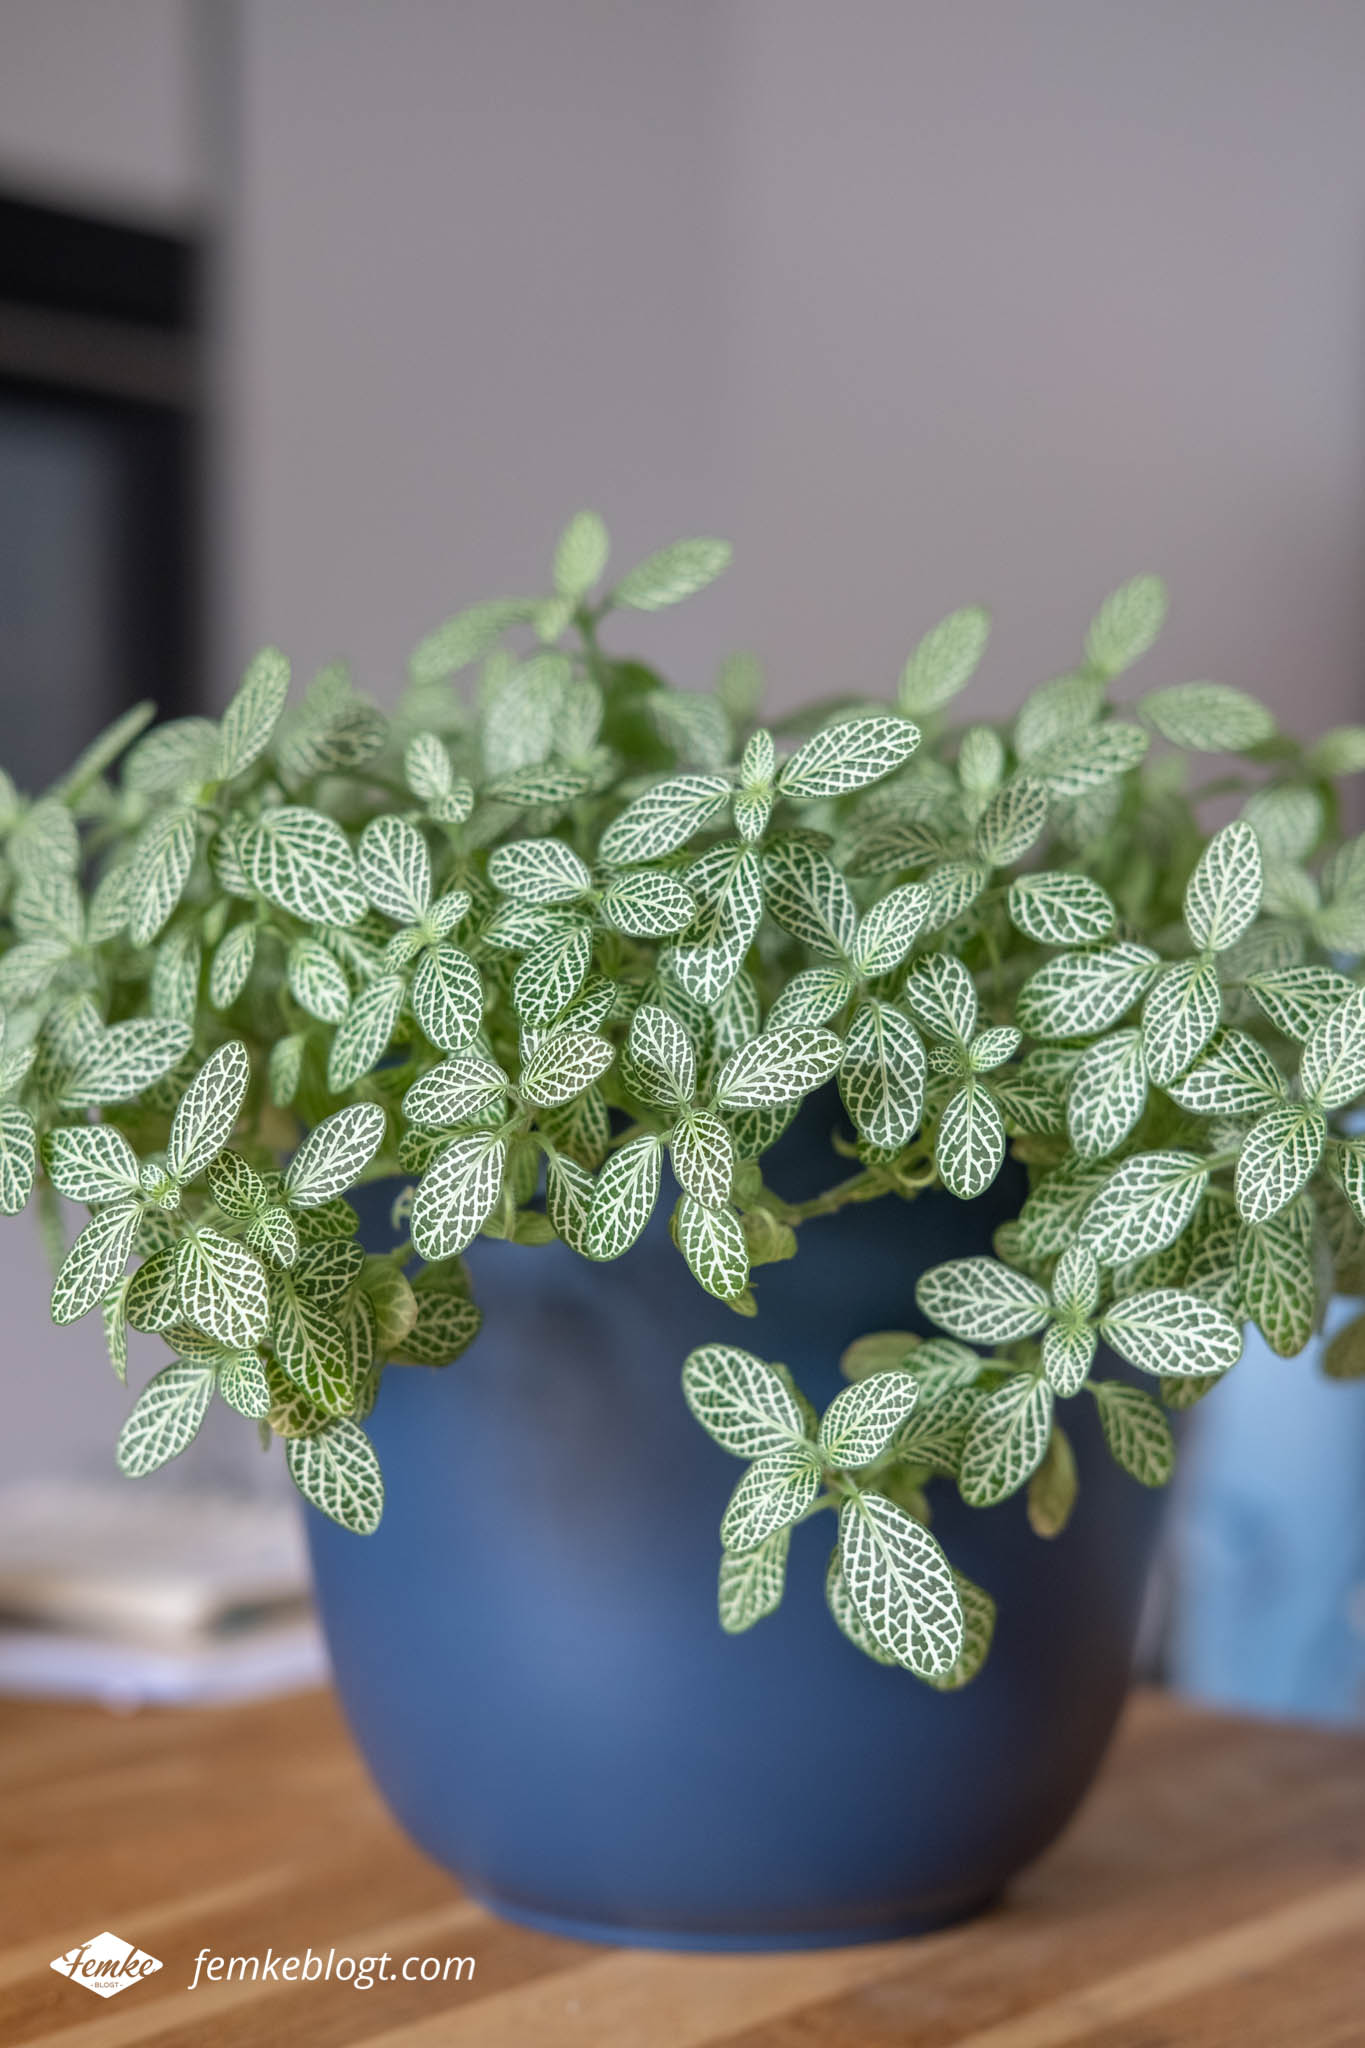 Verbanning scheuren naaimachine 11x Inspiratie voor de leukste planten in huis – Femke blogt